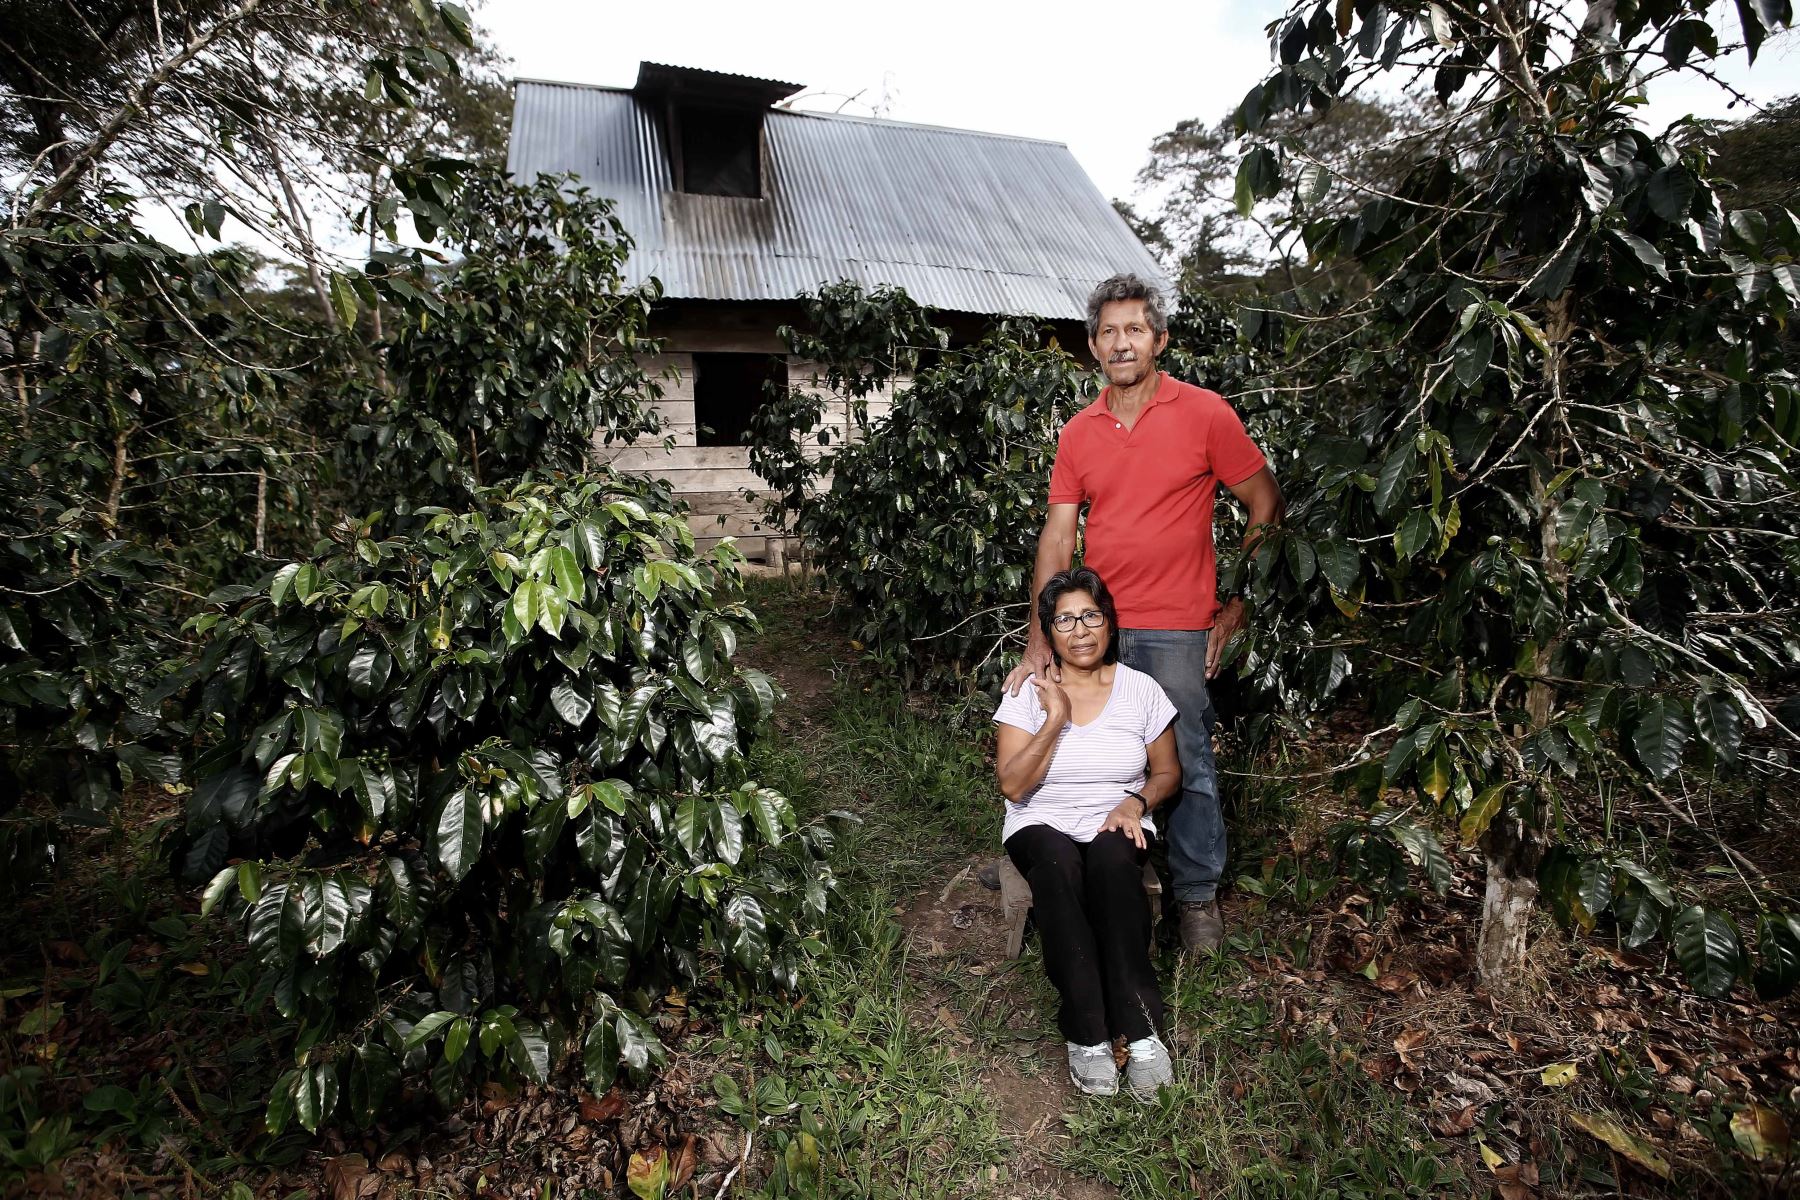 La historia que llevó a Villa Rica tener el mejor café del mundo. ANDINA/Luis Iparraguirre